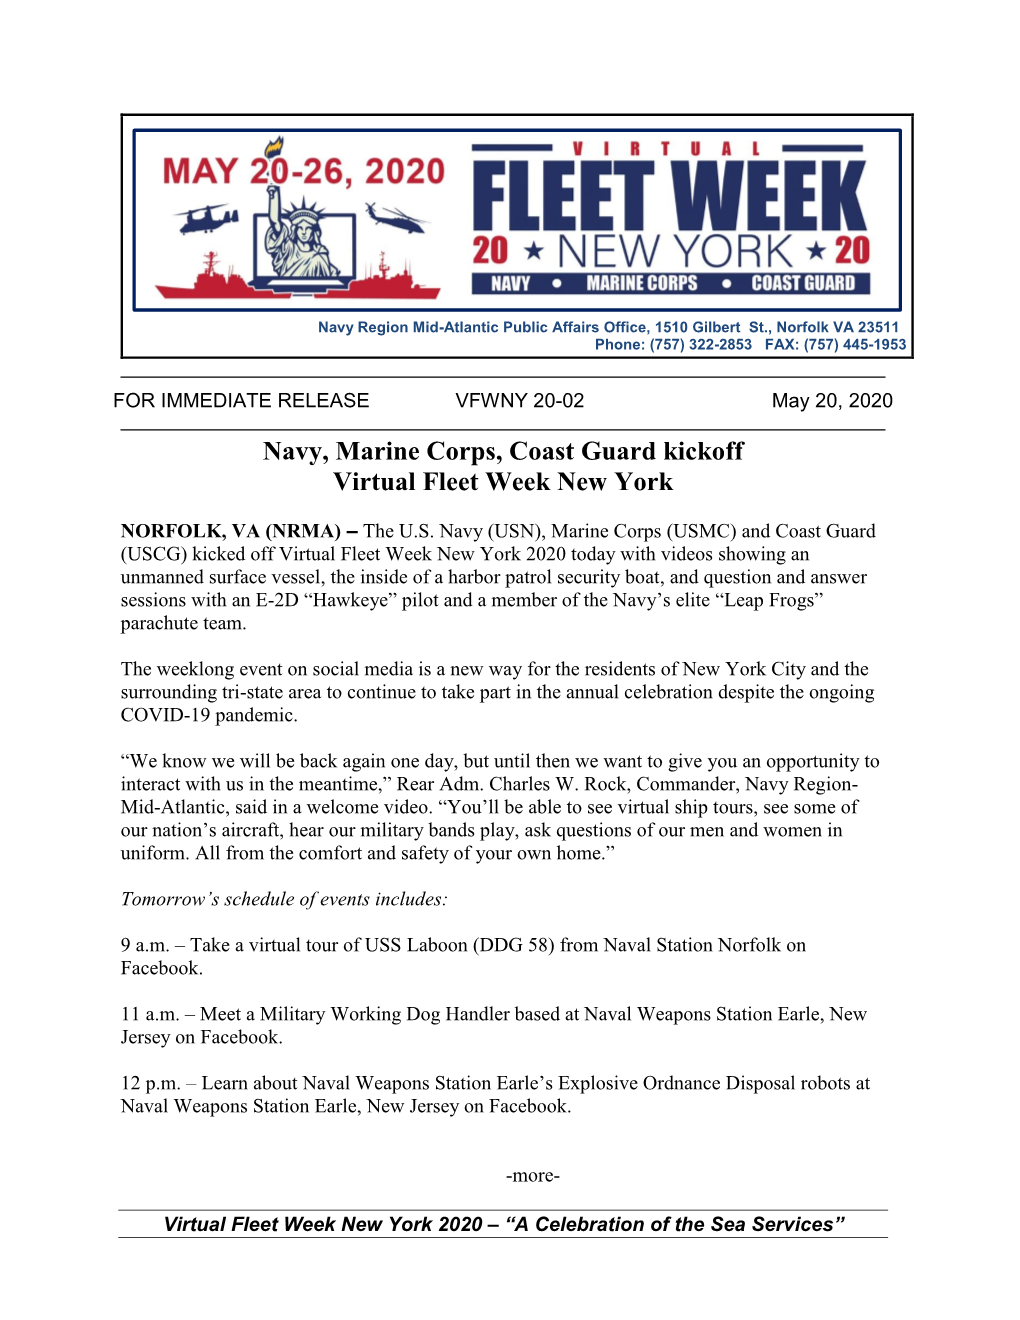 Navy, Marine Corps, Coast Guard Kickoff Virtual Fleet Week New York